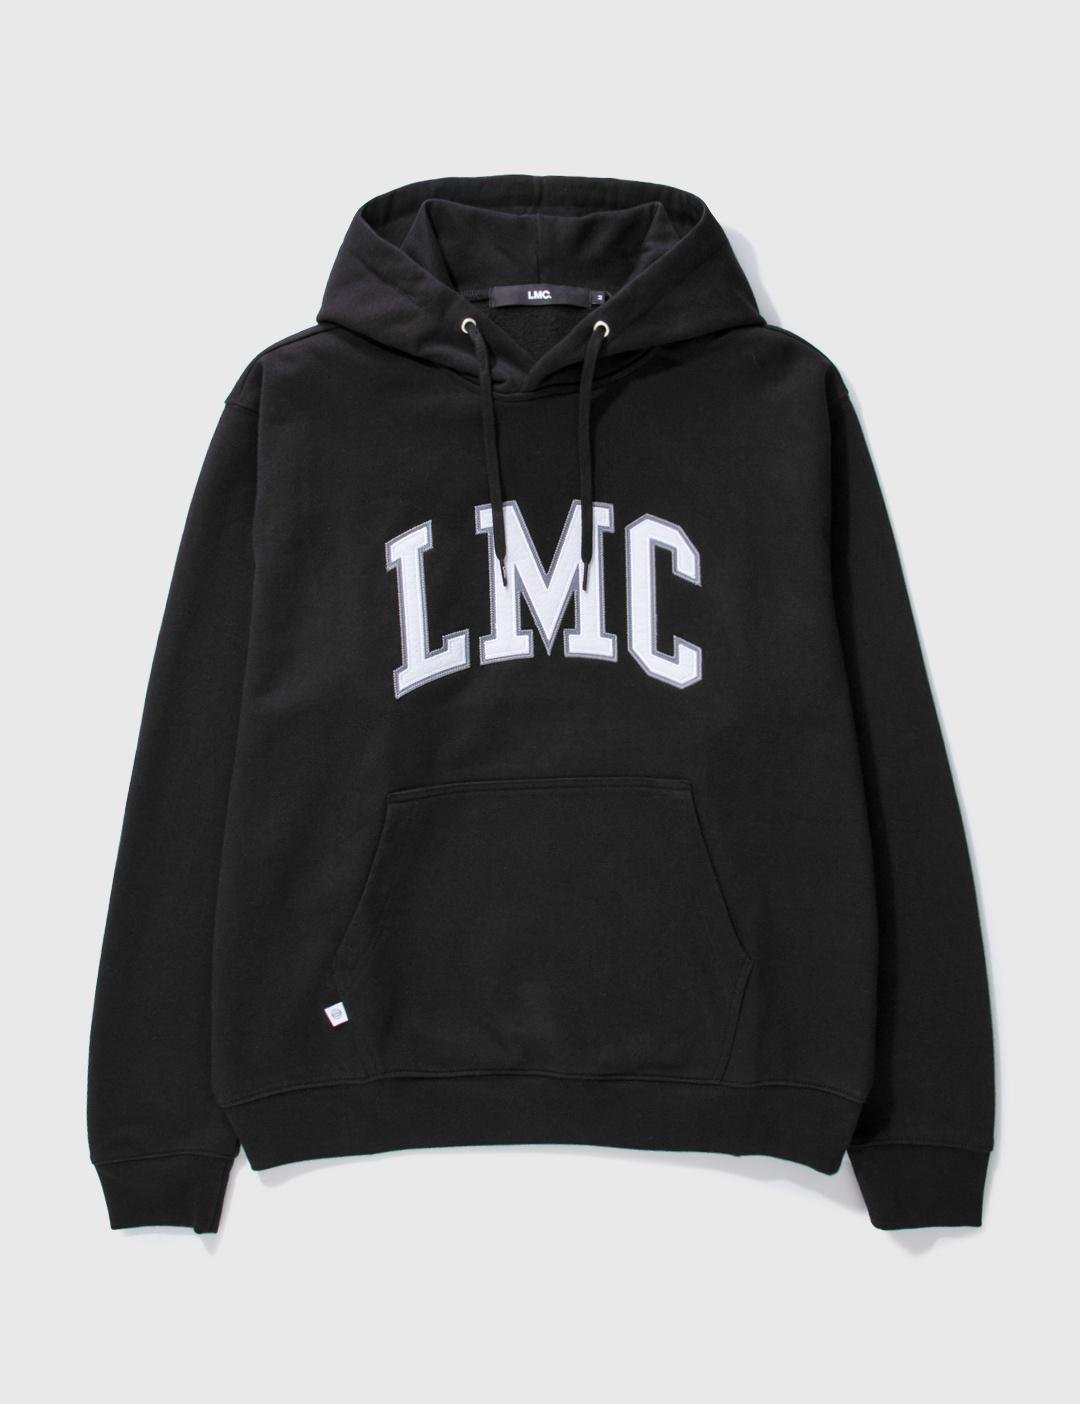 LMC Appliqué Arch OG Hoodie by LMC